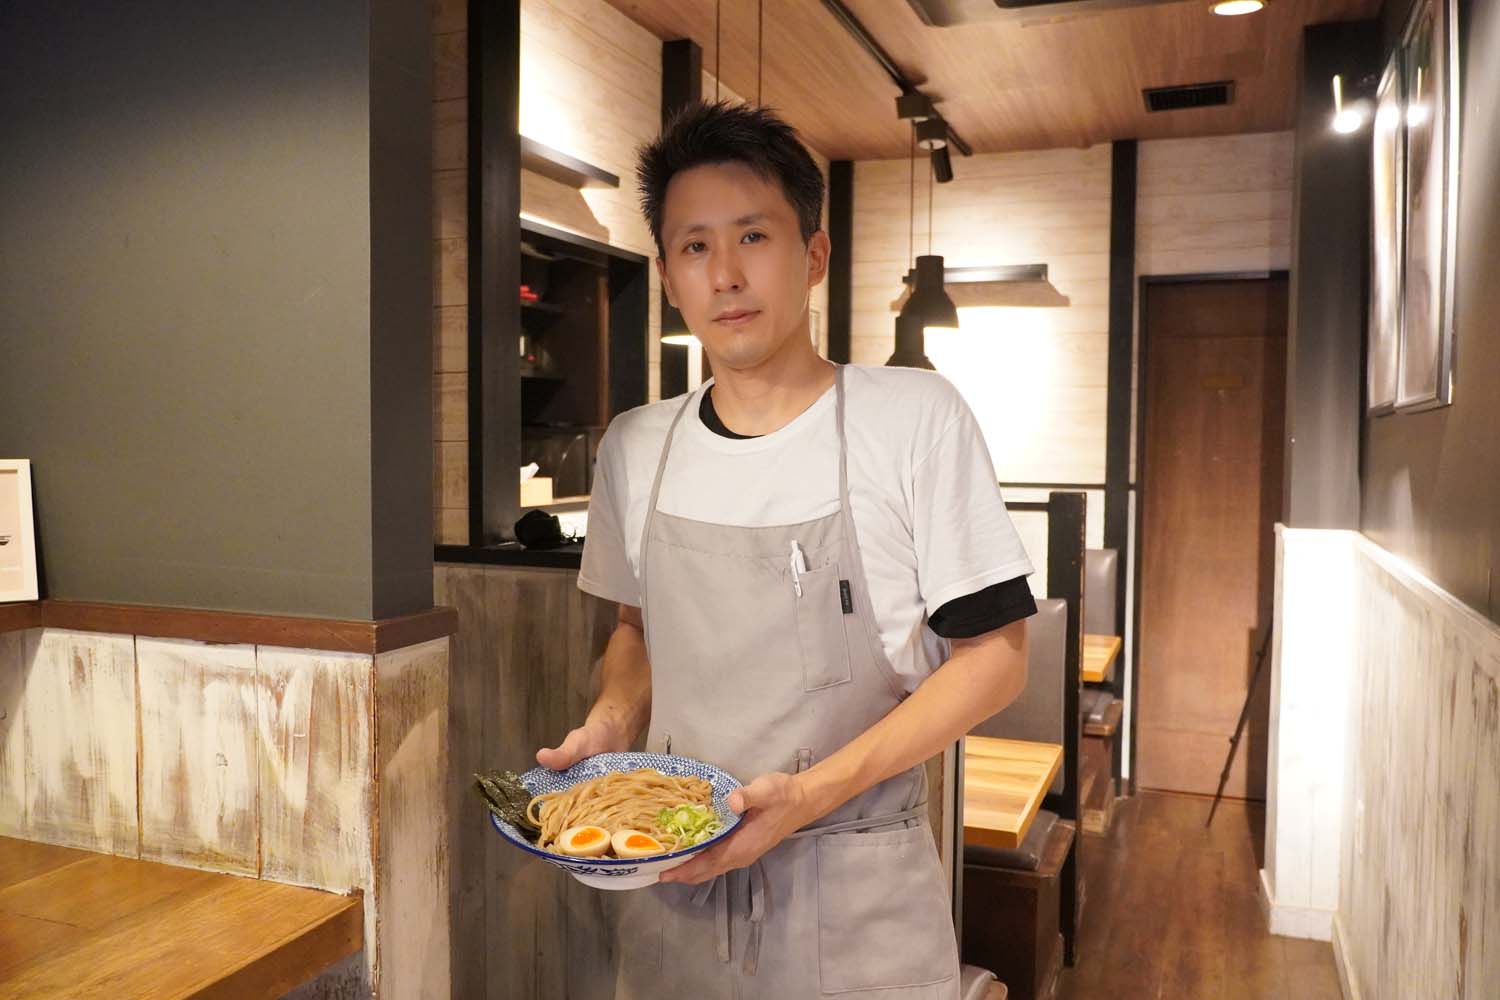 開店と同時にお客様がひっきりなしに訪れ、調理する手が止まることがない椎野店長。